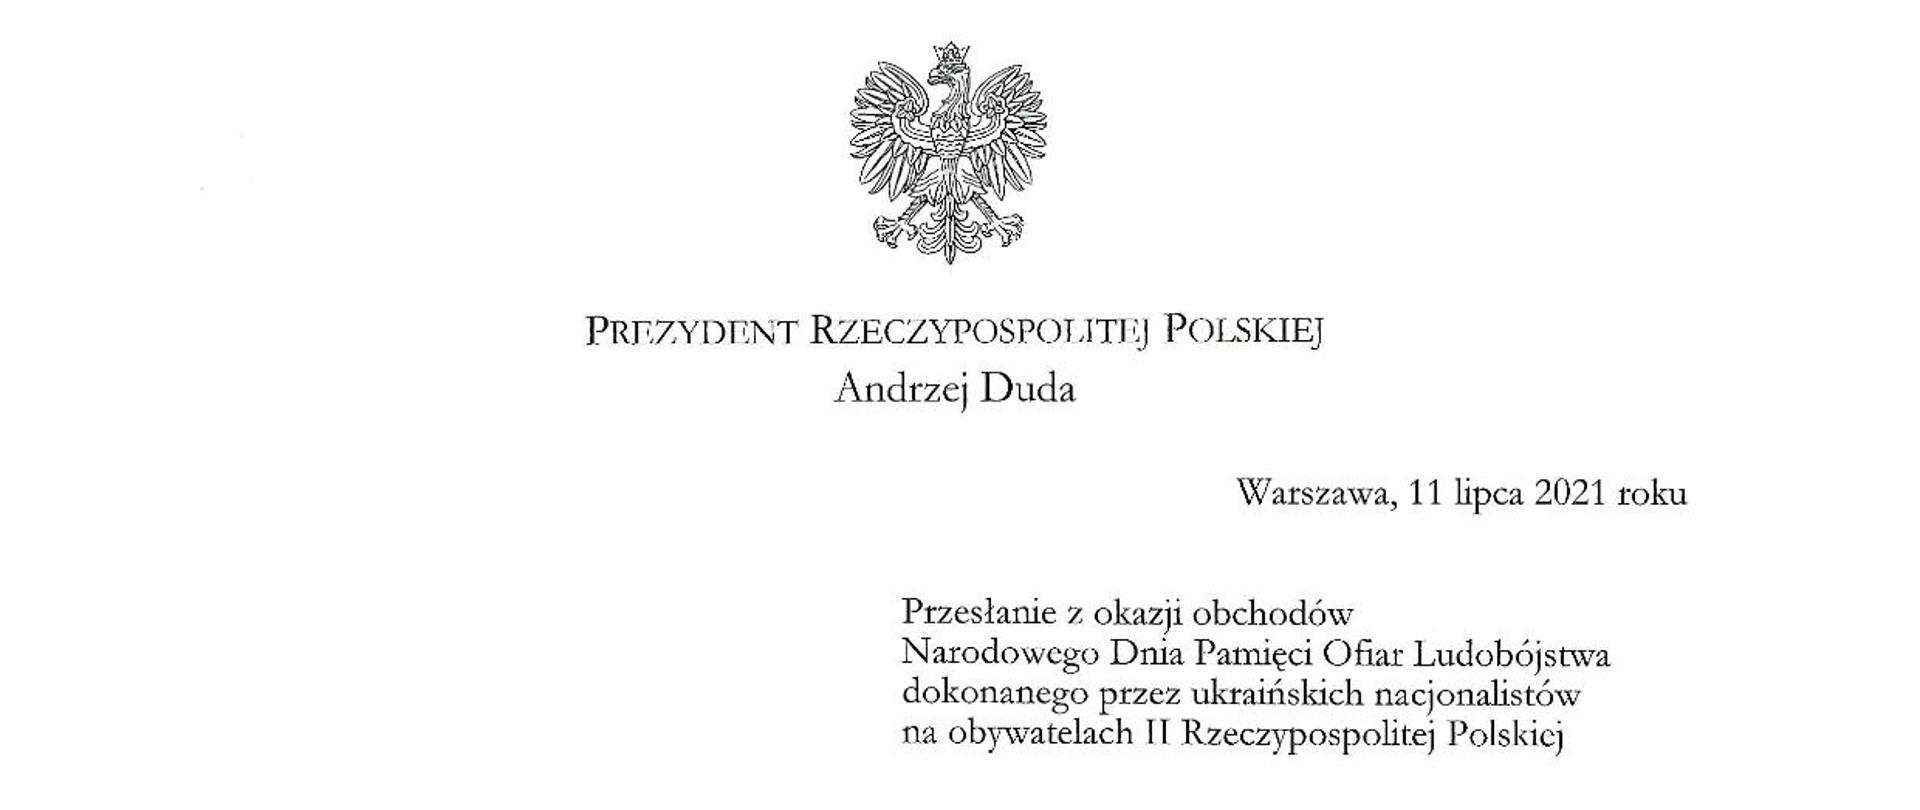 Przesłanie Prezydenta Polski Andrzeja Dudy z okazji obchodów Narodowego Dnia Pamięci Ofiar Ludobójstwa dokonanego przez ukraińskich nacjonalistów na obywatelach II Rzeczypospolitej.